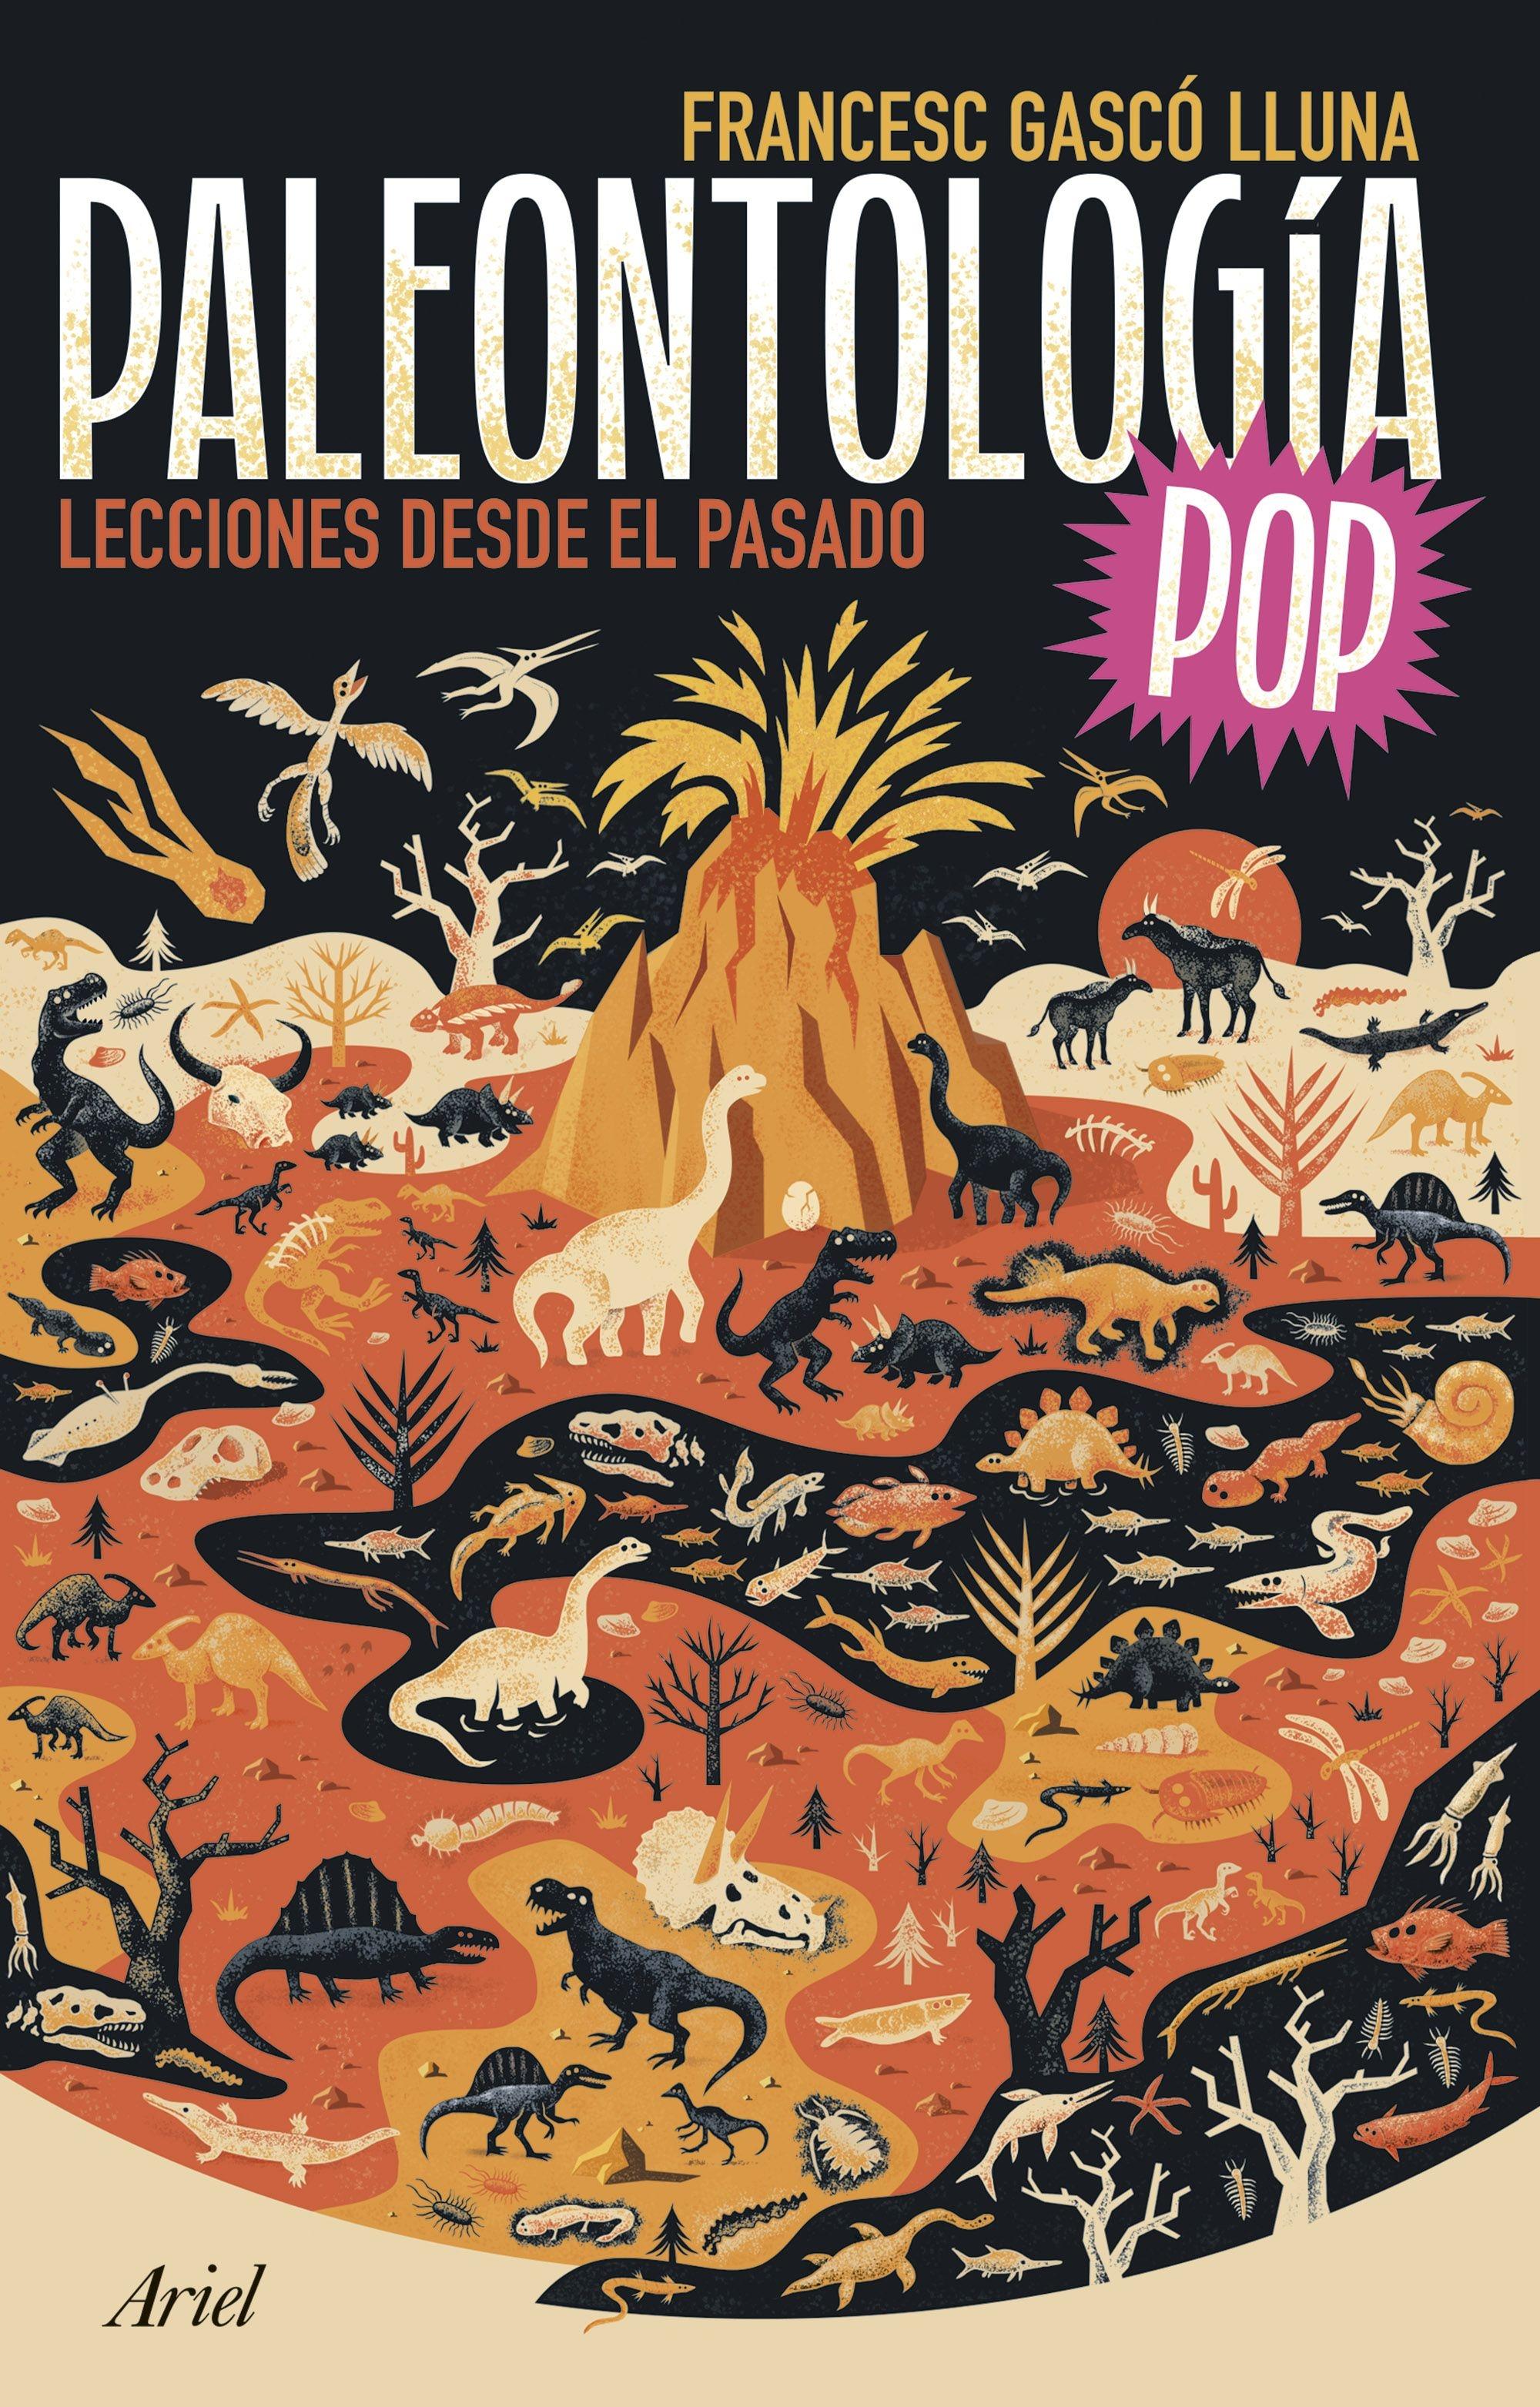 Paleontología Pop "Lecciones desde el Pasado"